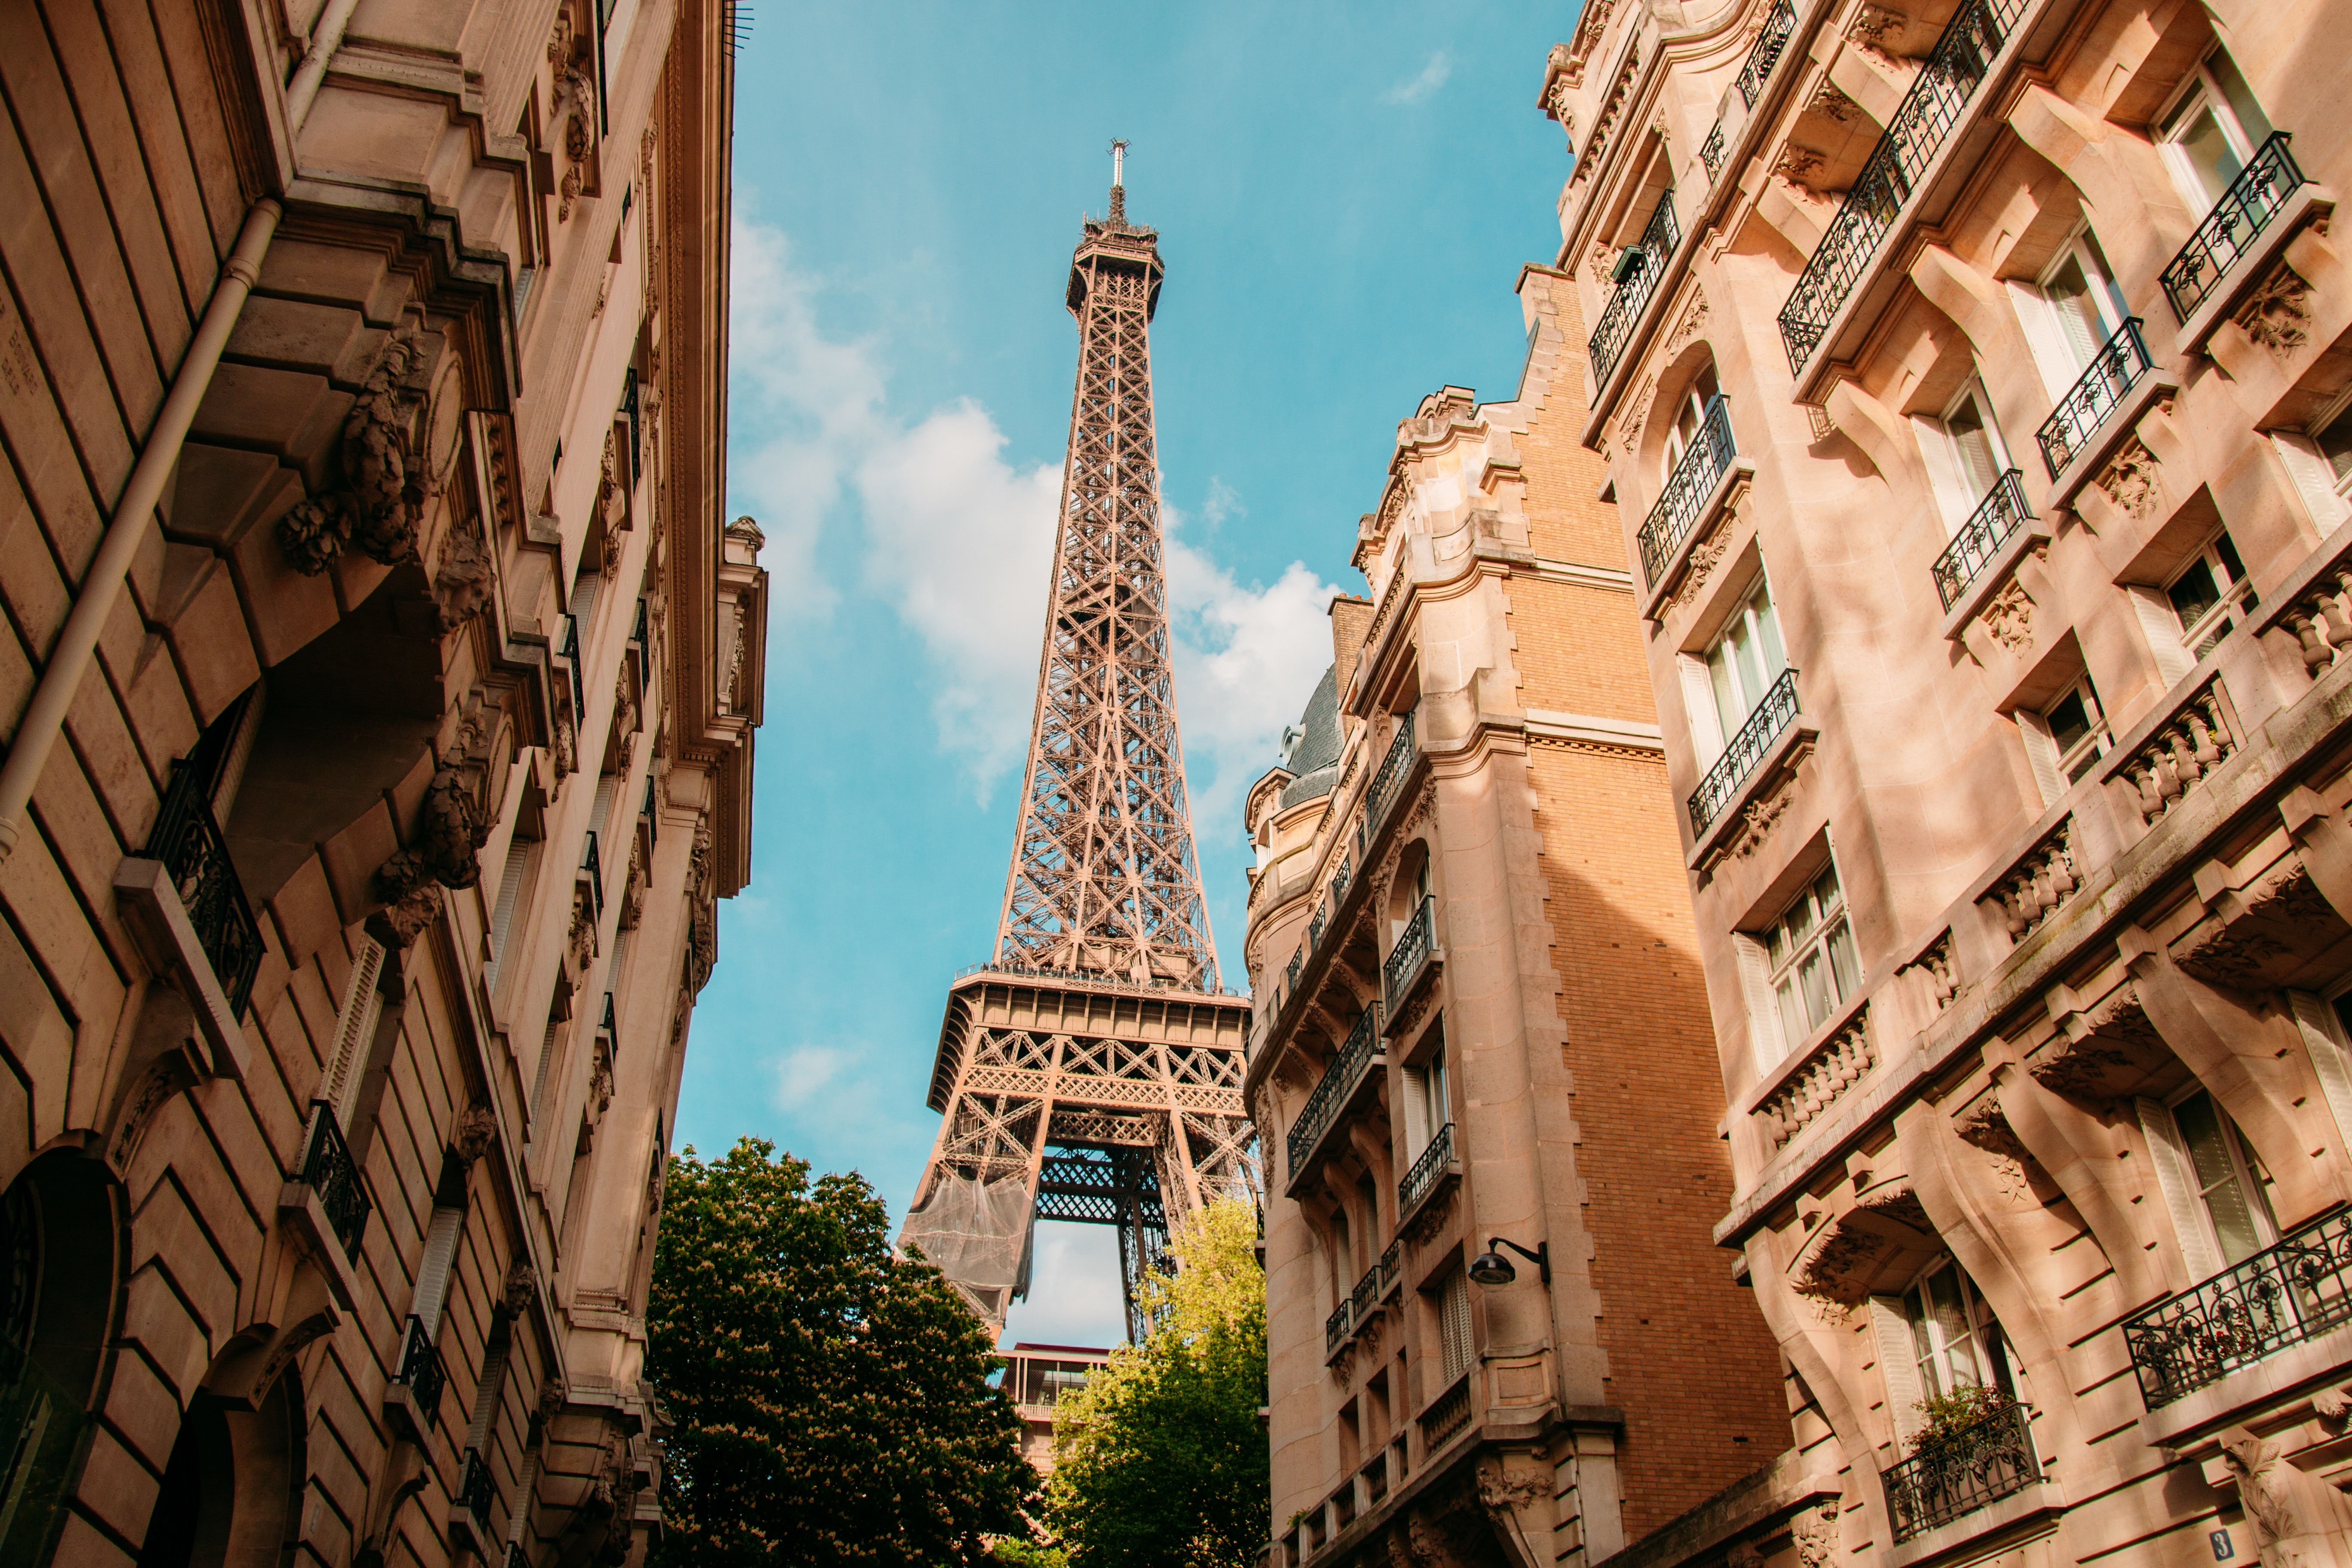 The Eiffel Tower behind beautiful Parisian buildings